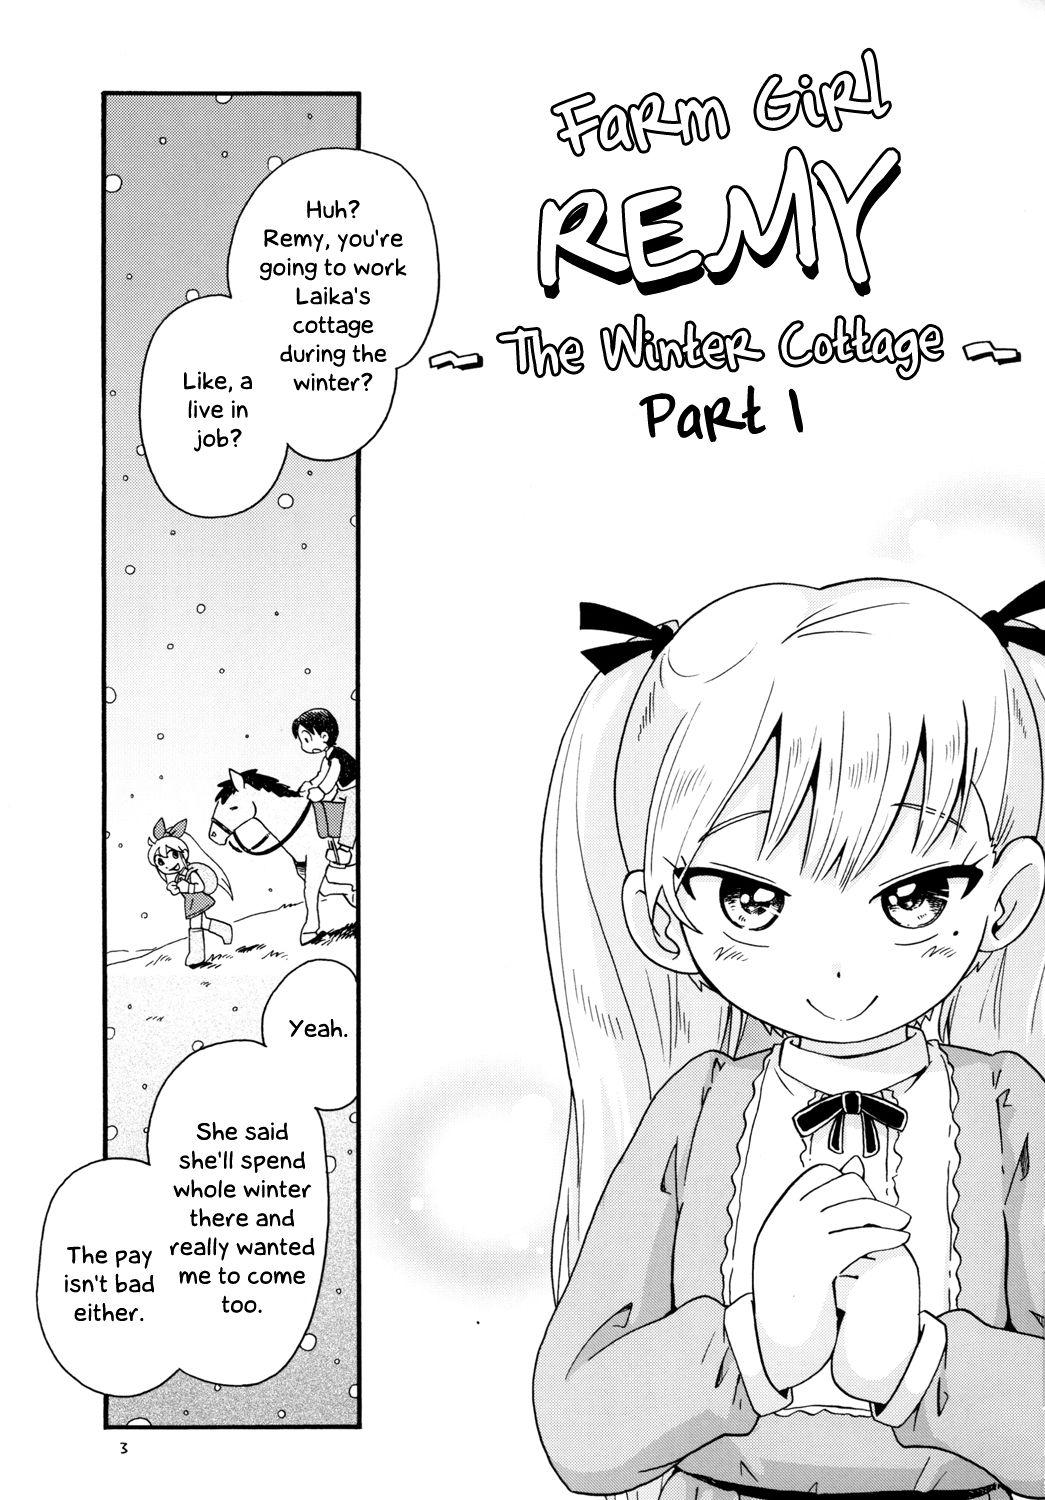 Bokujou no Shoujo Remy1 | Farm Girl RemyPart 1 2